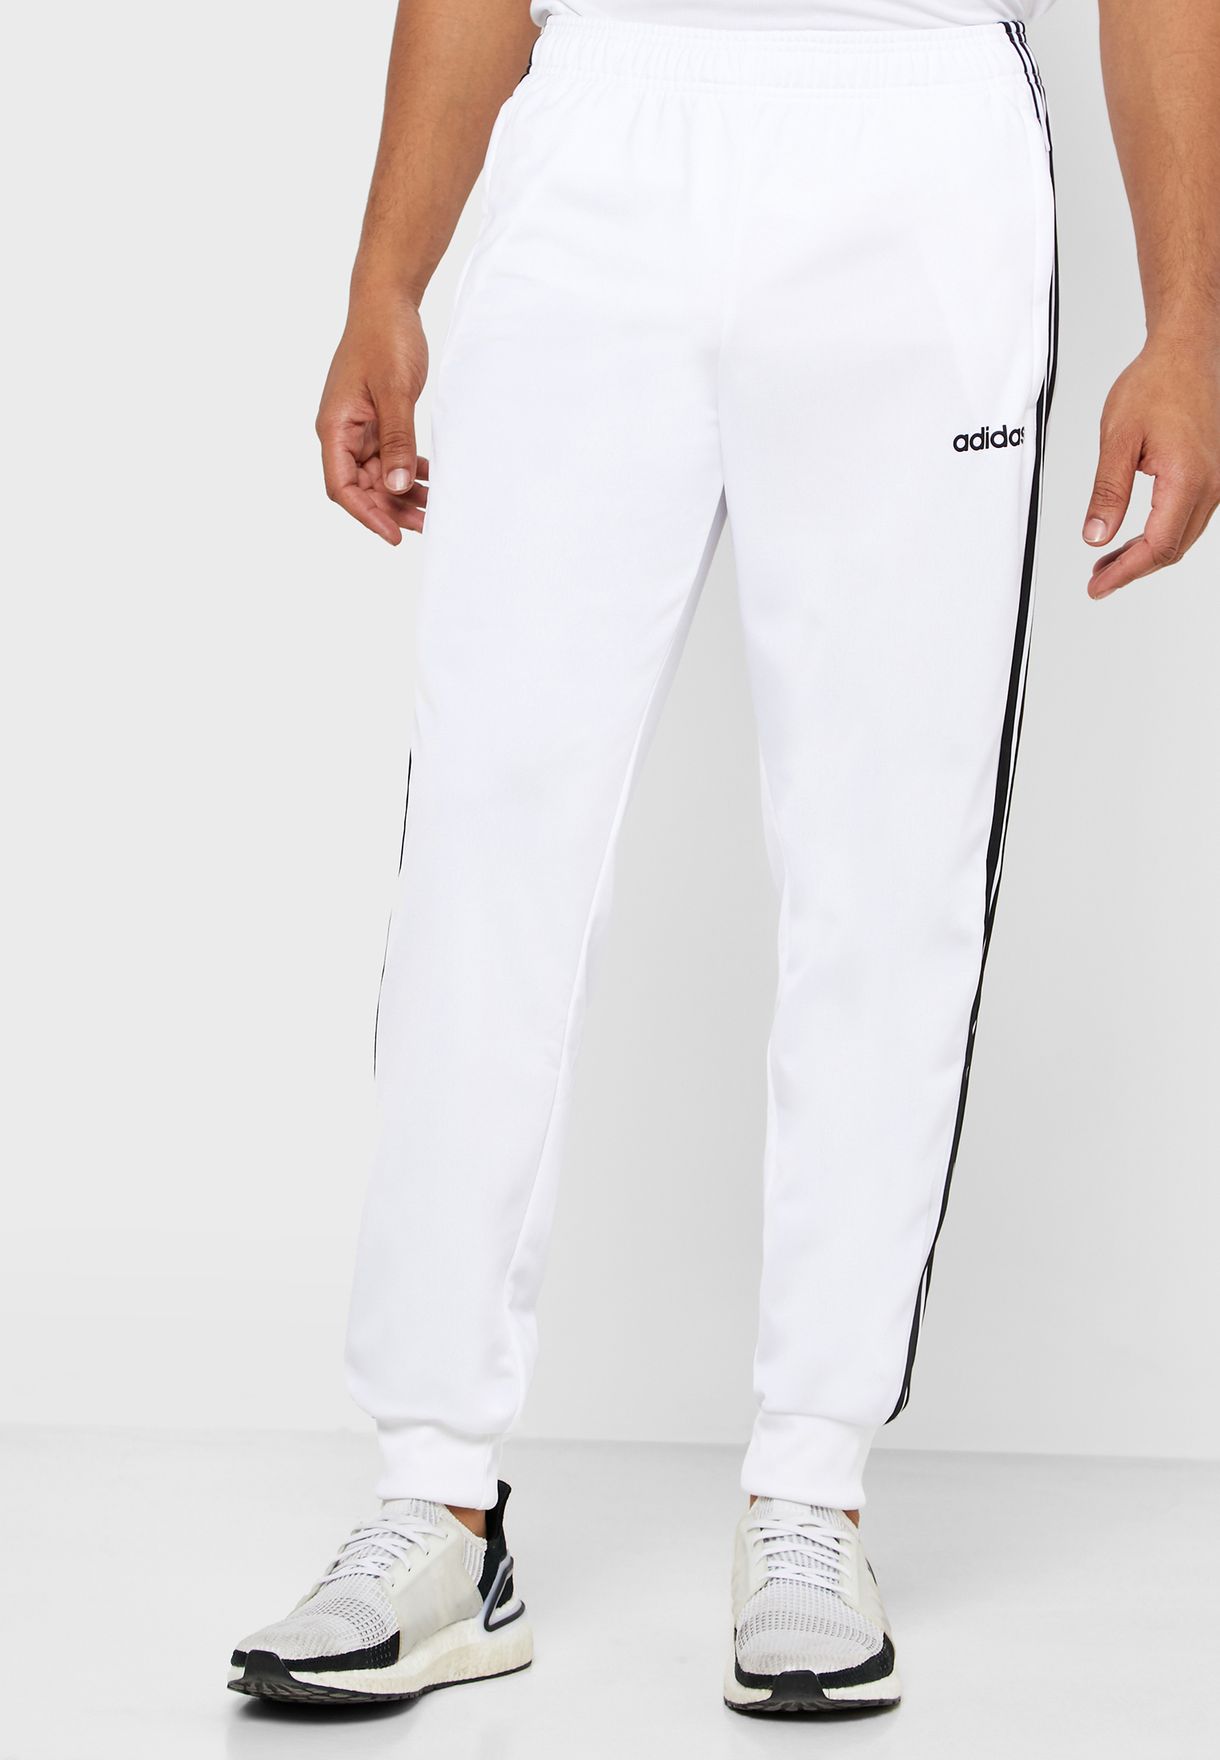 white adidas pants with white stripes